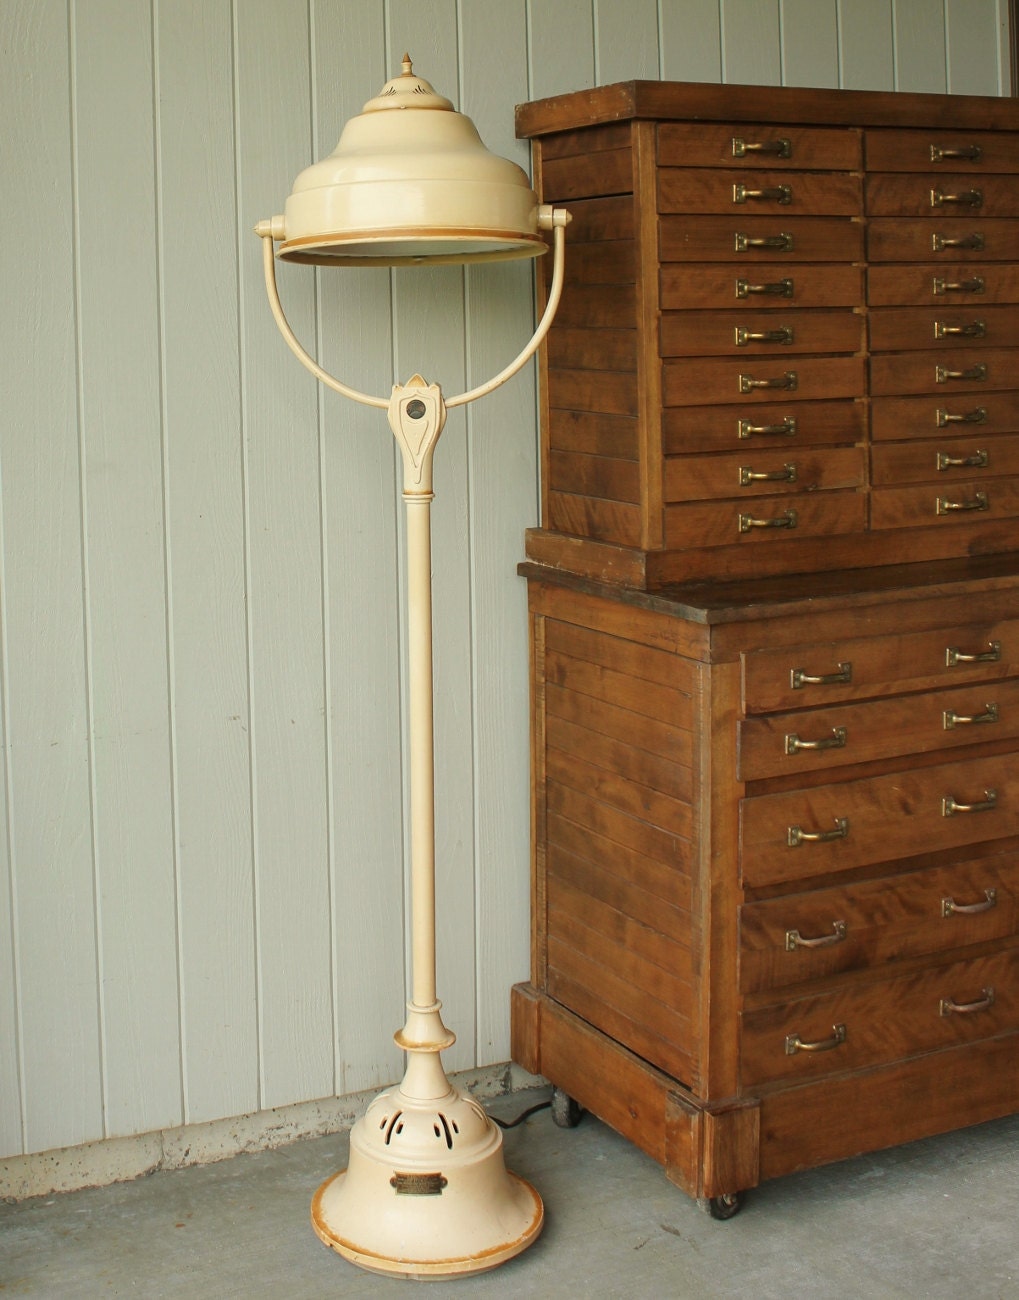 Antique Industrial Dominion Sunlamp Floor Lamp